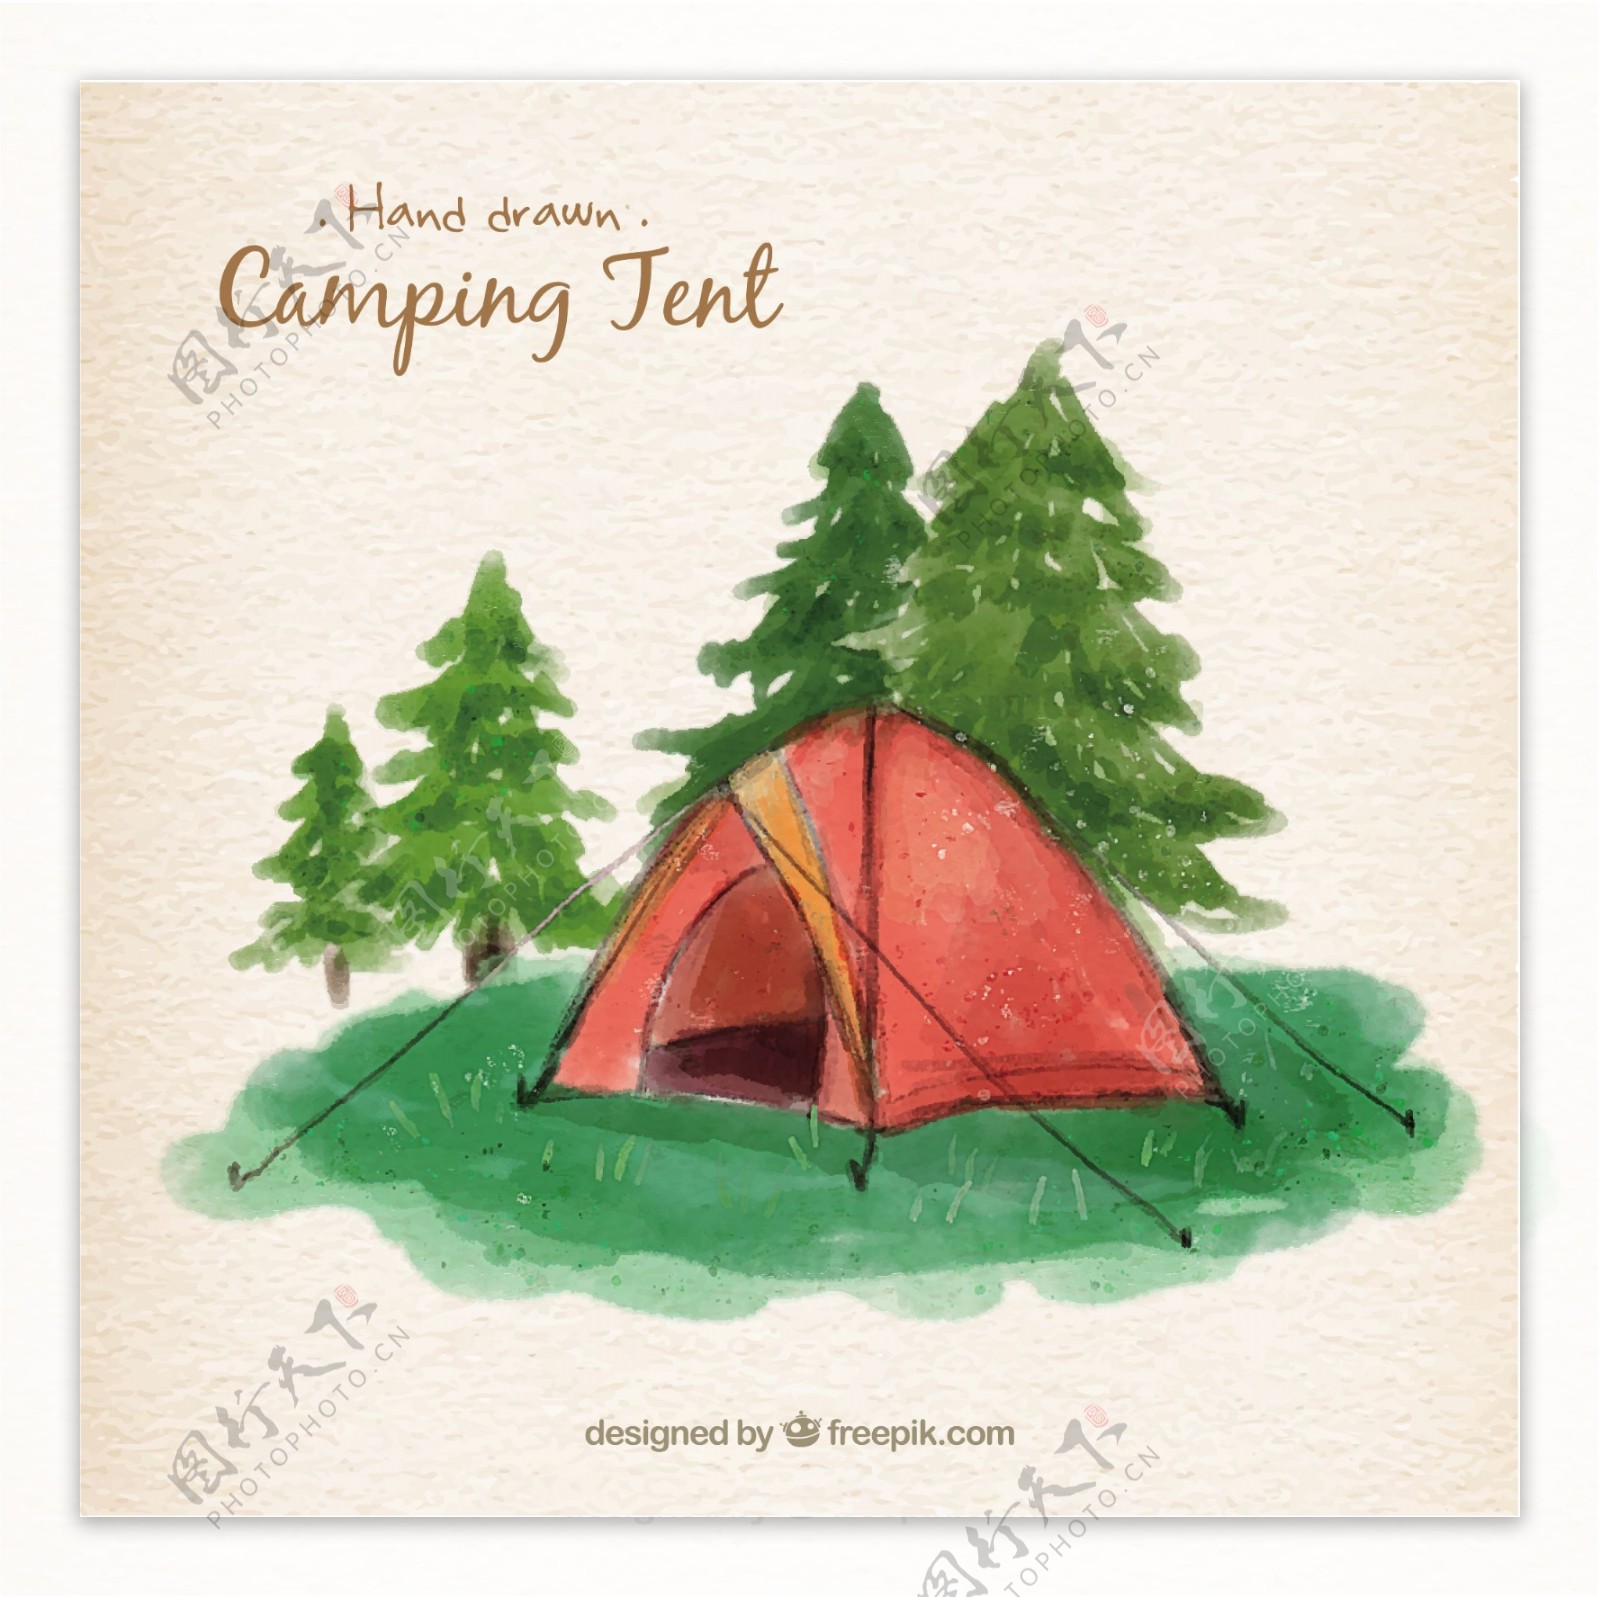 水彩画在风景中的红色野营帐篷